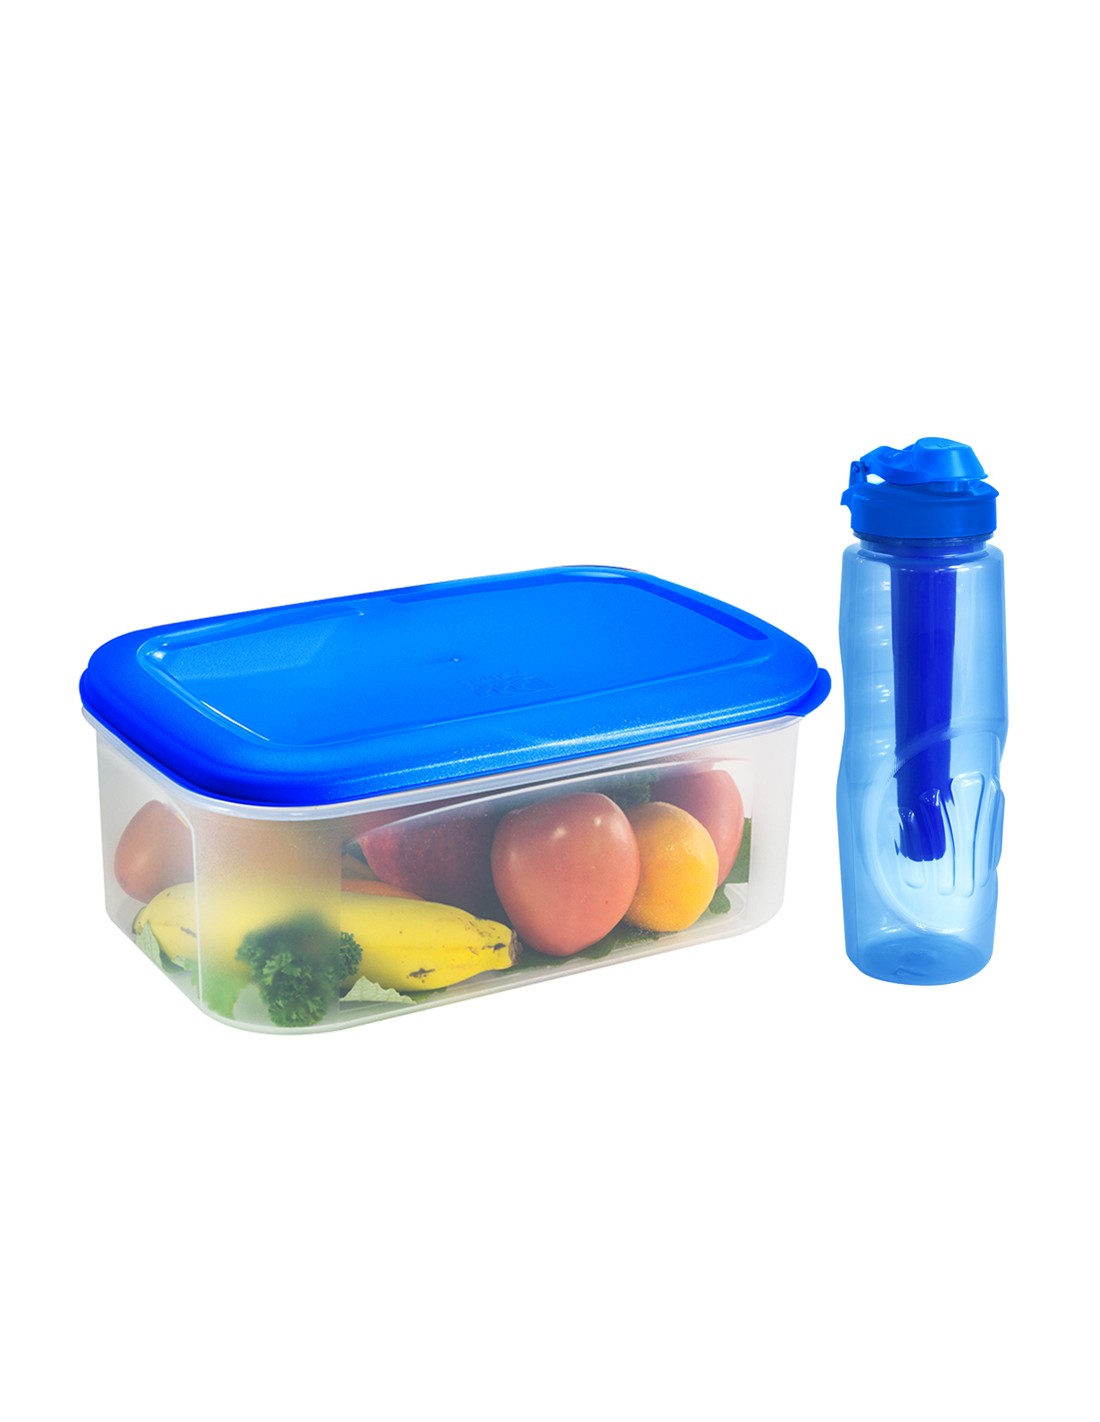 Envases de plástico: 5 recipientes para almacenar tus alimentos